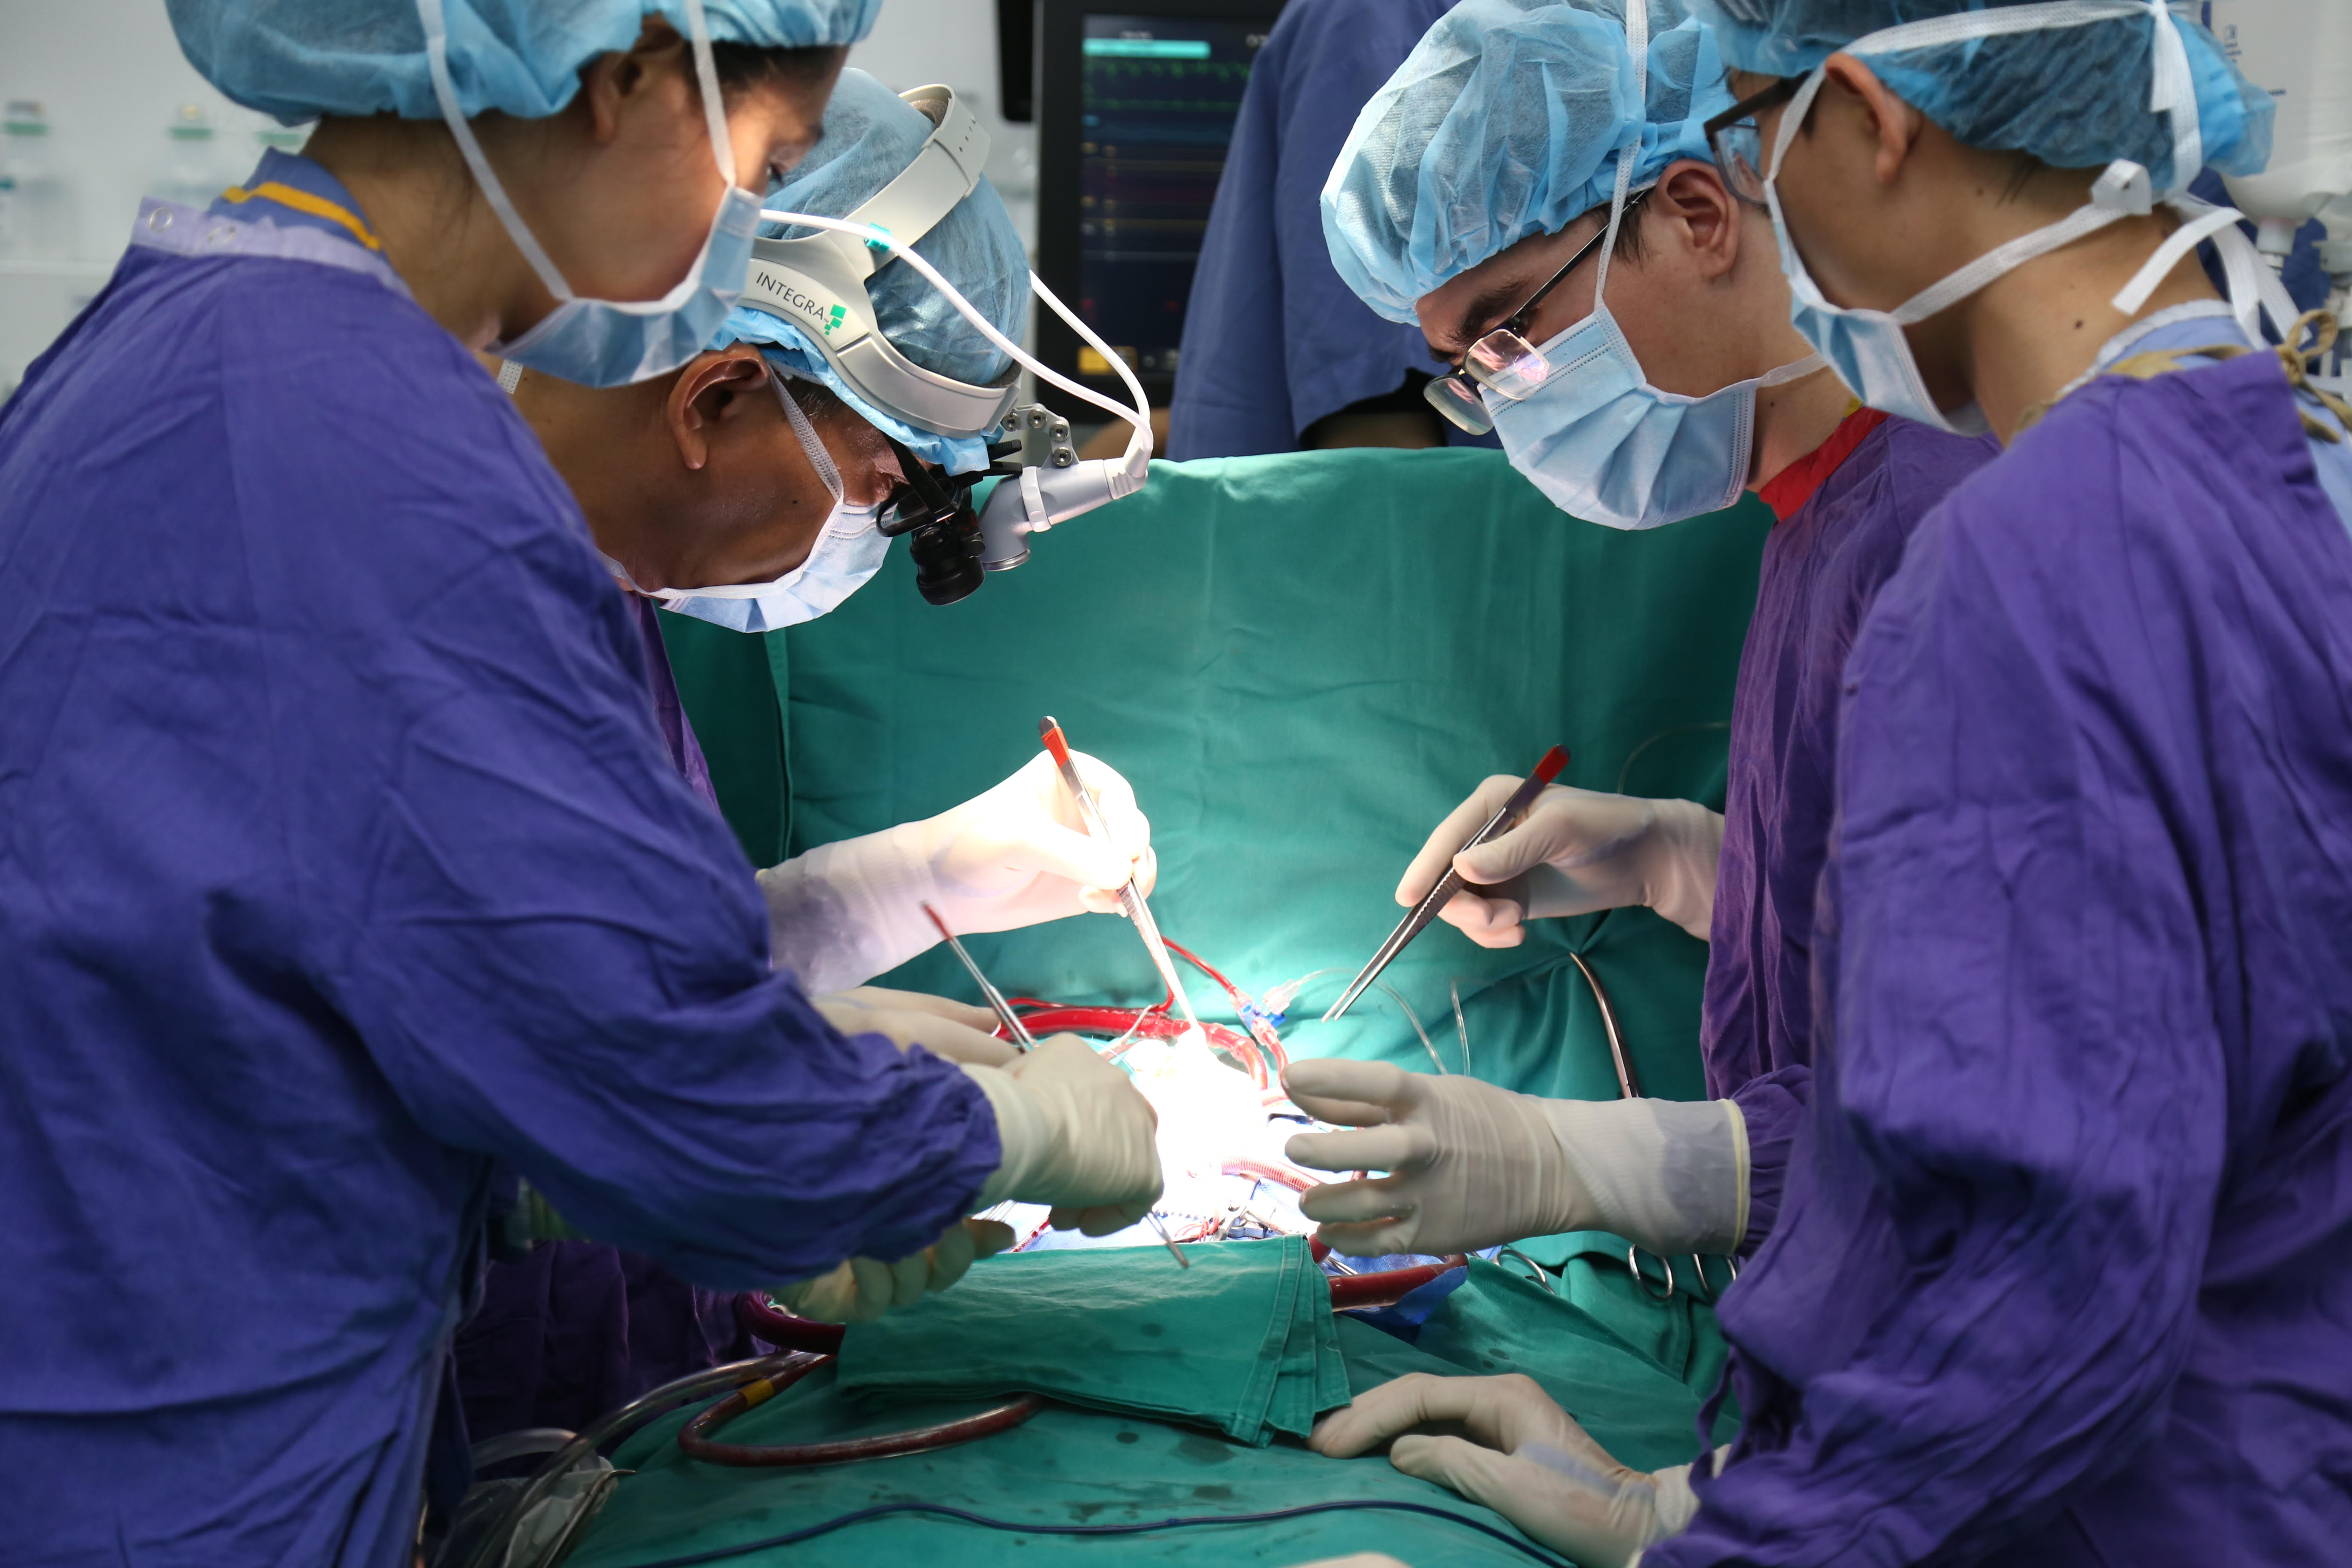 Kỷ lục mới: Ghép tim cho bệnh nhân nhỏ tuổi nhất Việt Nam, nặng 16 kg